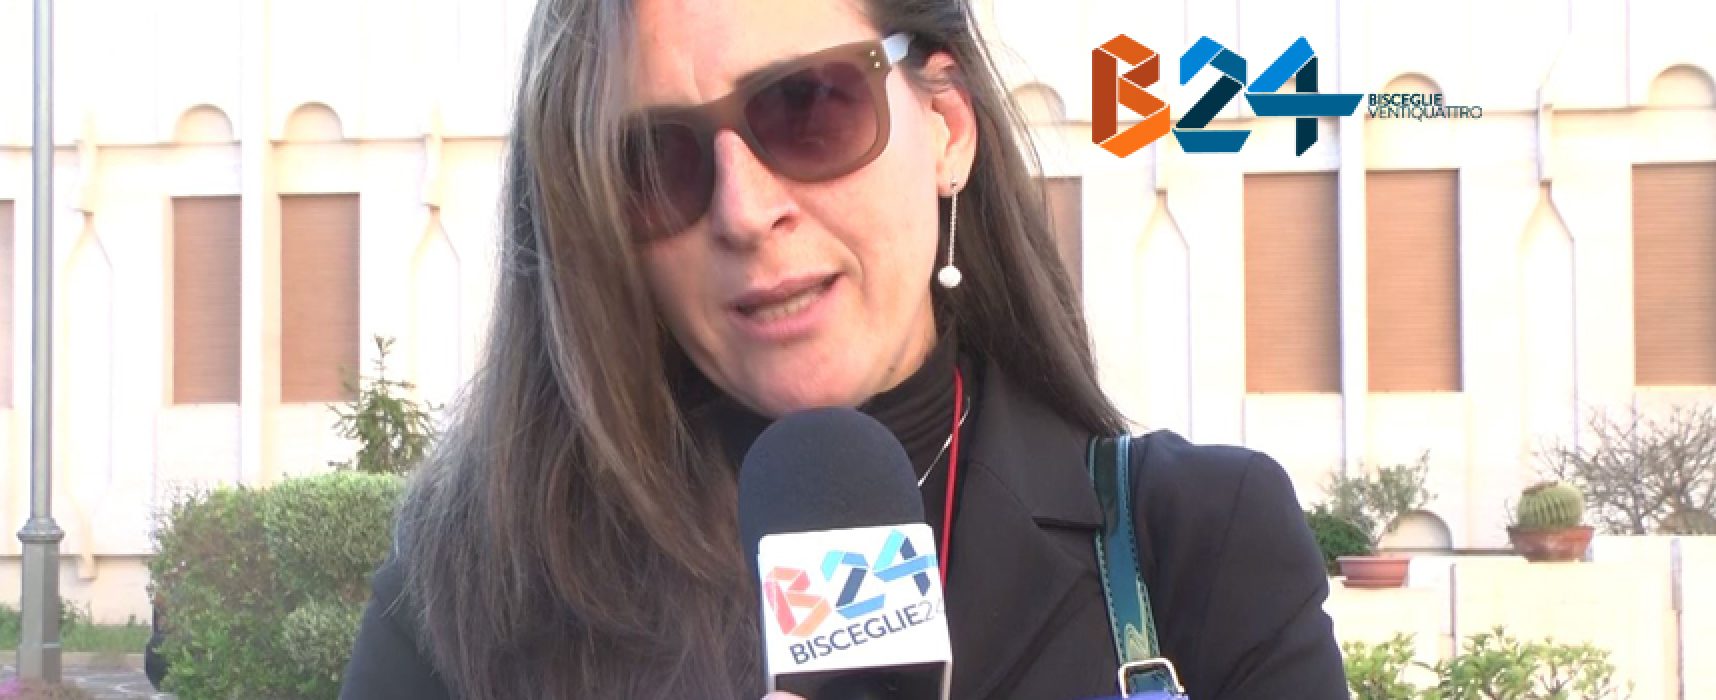 Cdp, Cozzoli convoca Anna Livrieri; la dipendente: “Ho avuto rassicurazioni” / VIDEO